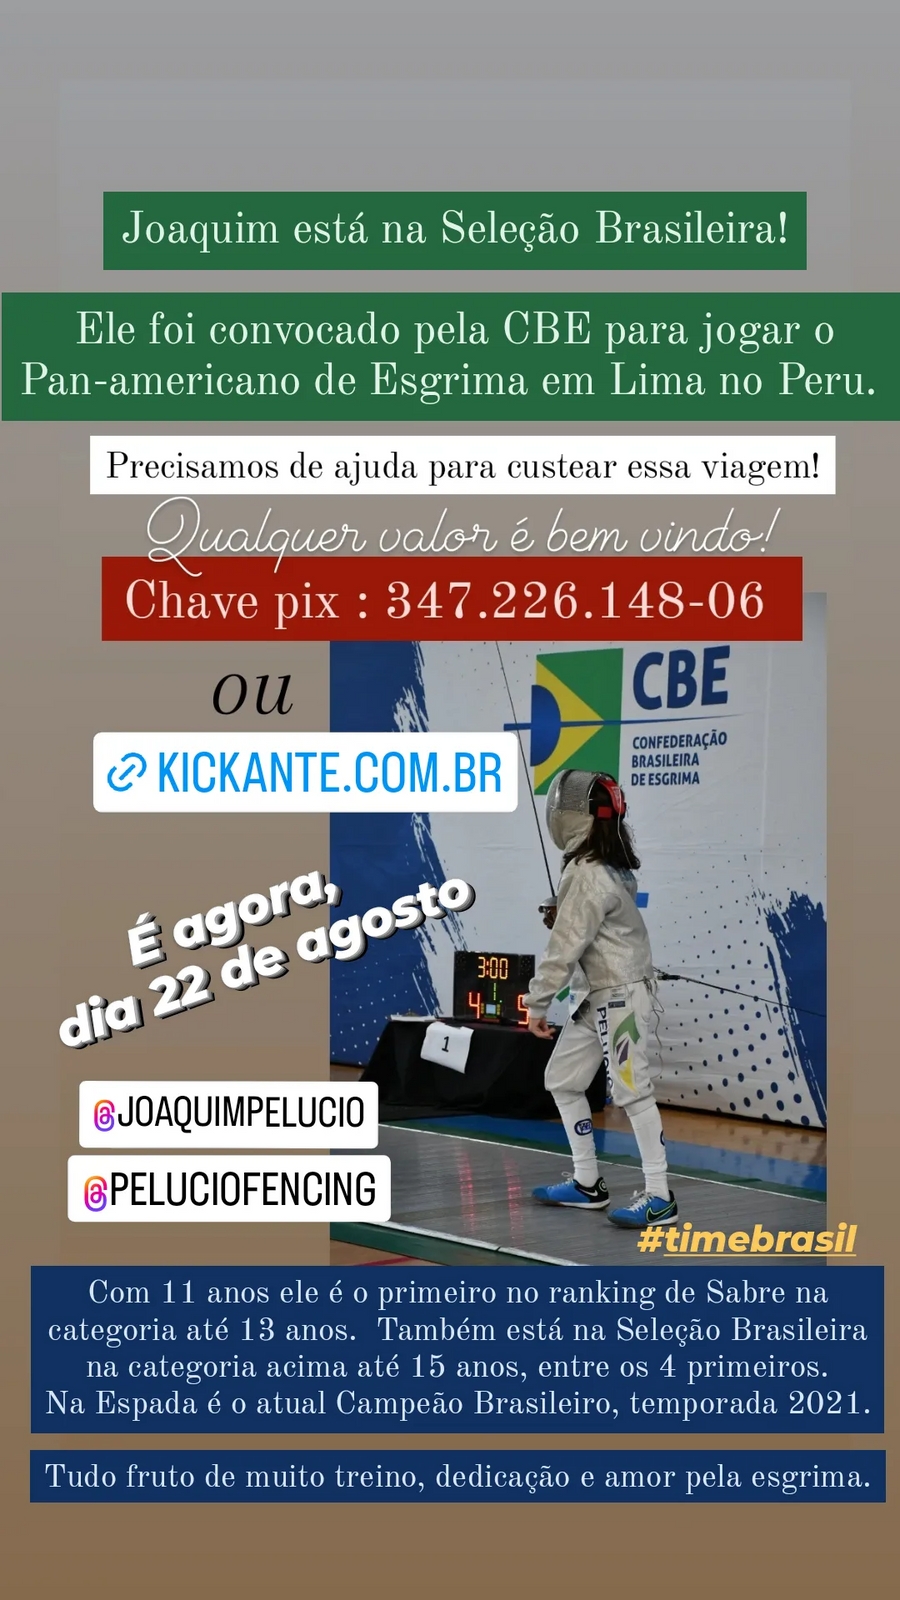 Vamos levar o Joaquim para representar o Brasil no Pan-americano em Lima imagem 6